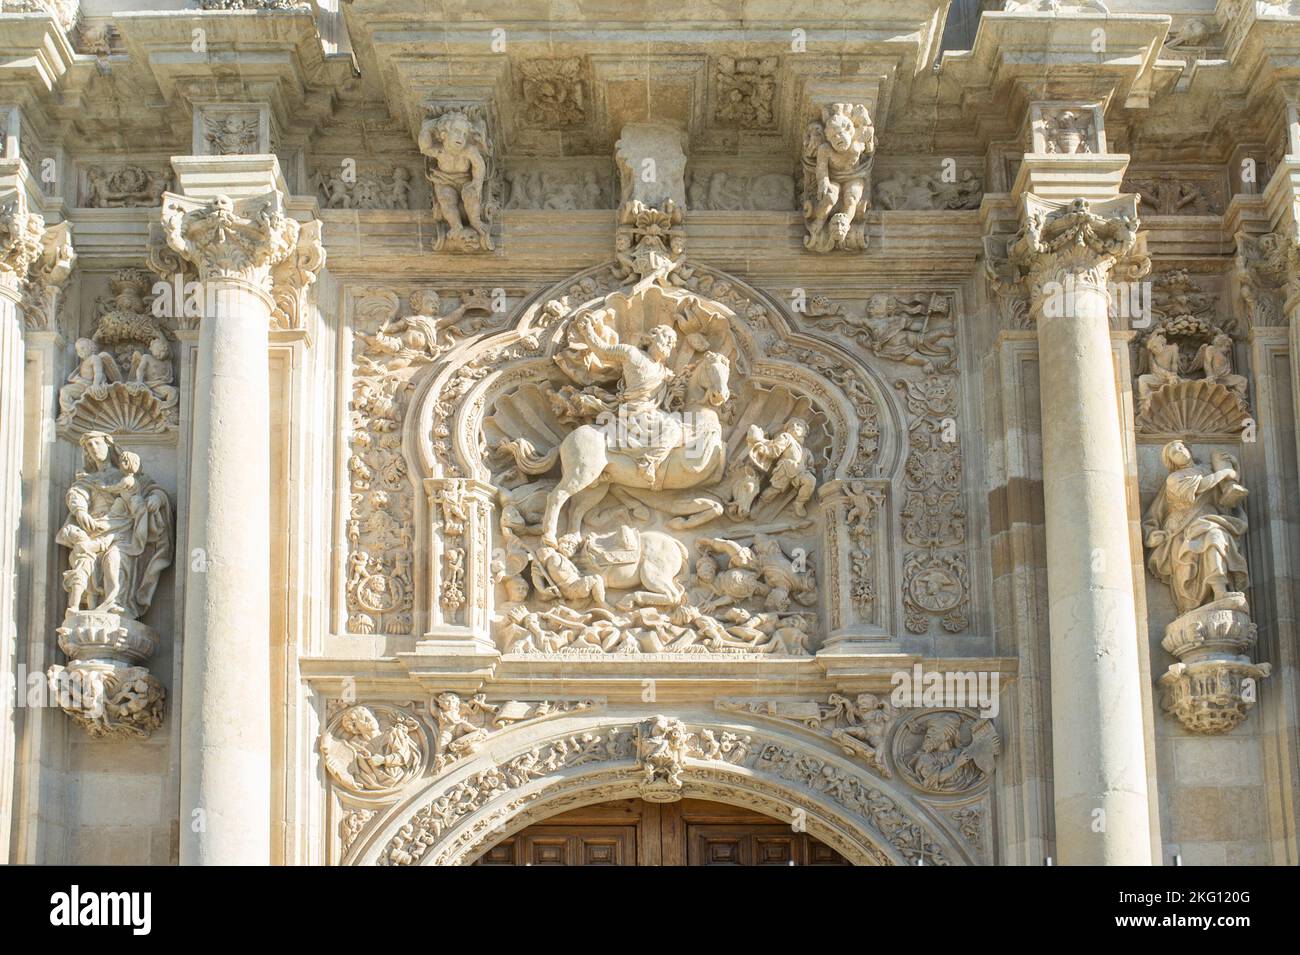 Skulptur des heiligen Jakobus des Mauren-Totschlägers. Kloster von San Marcos, Leon, Spanien. Das Gebäude aus dem 12. Jahrhundert beherbergt heute ein luxuriöses Parador-Hotel Stockfoto